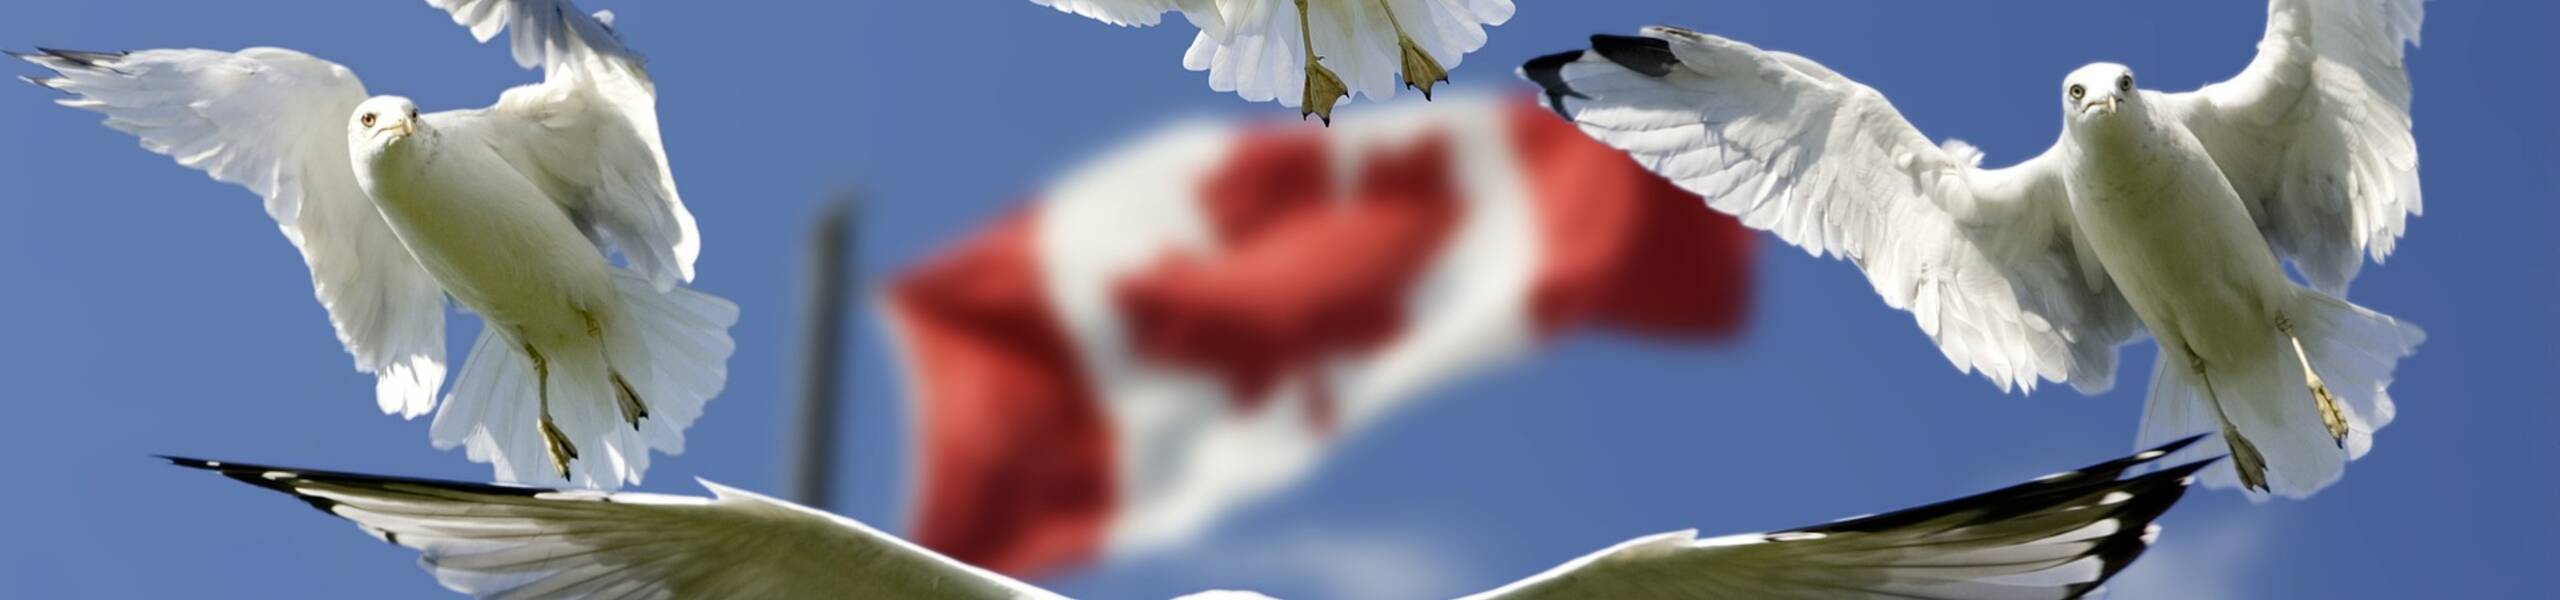 Banco do Canadá espera taxas mais altas no futuro